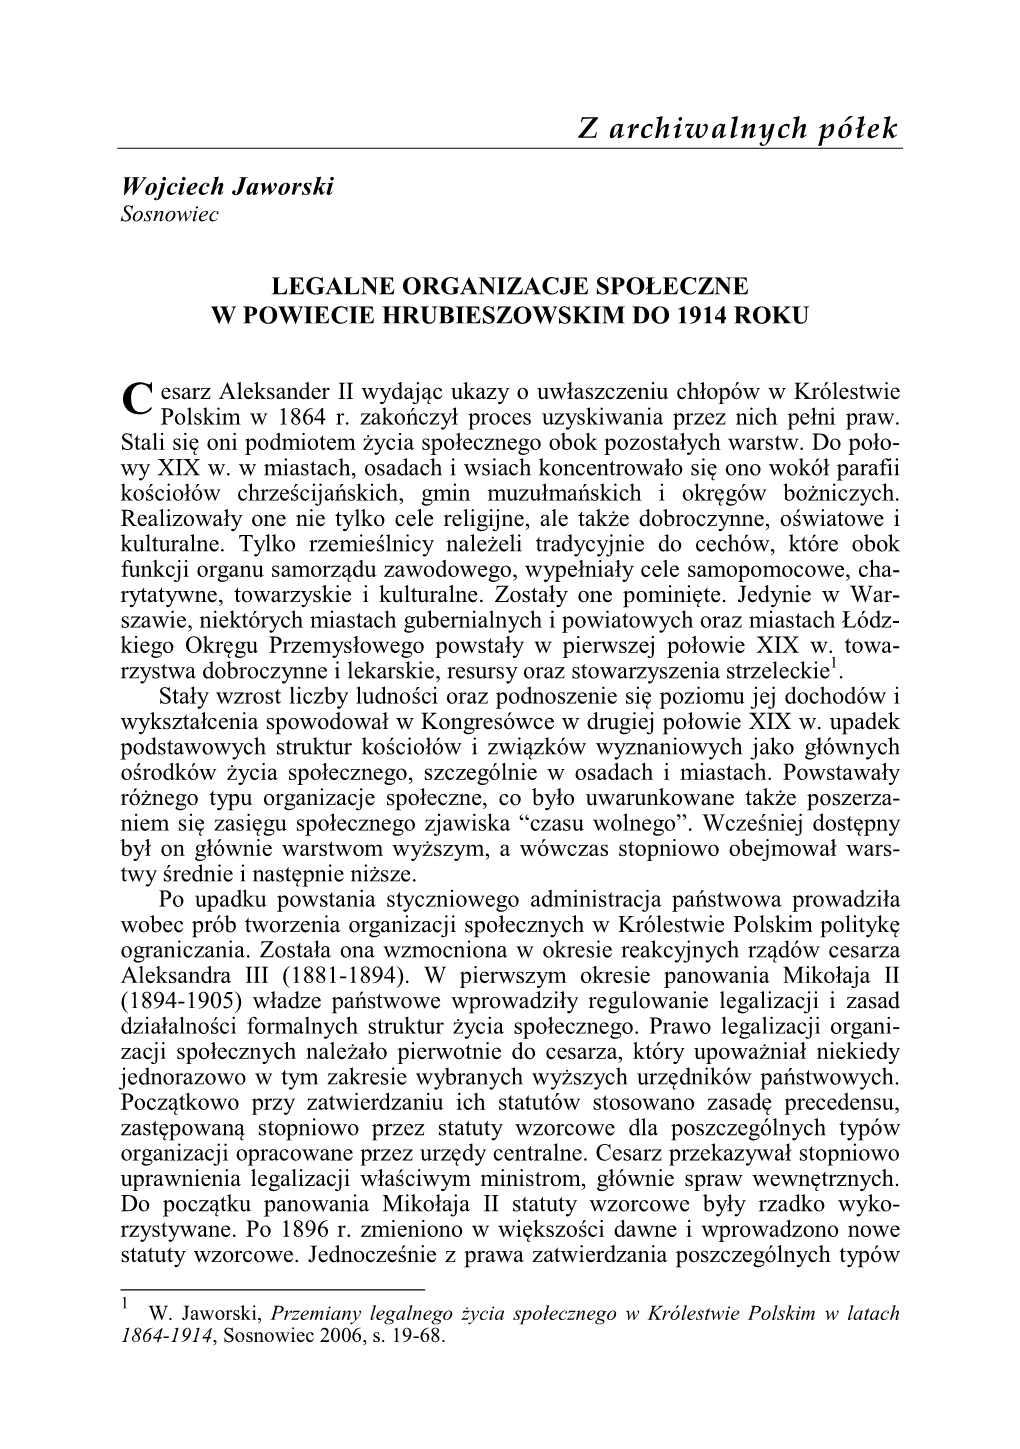 Legalne Organizacje Społeczne W Powiecie Hrubieszowskim Do 1914 Roku